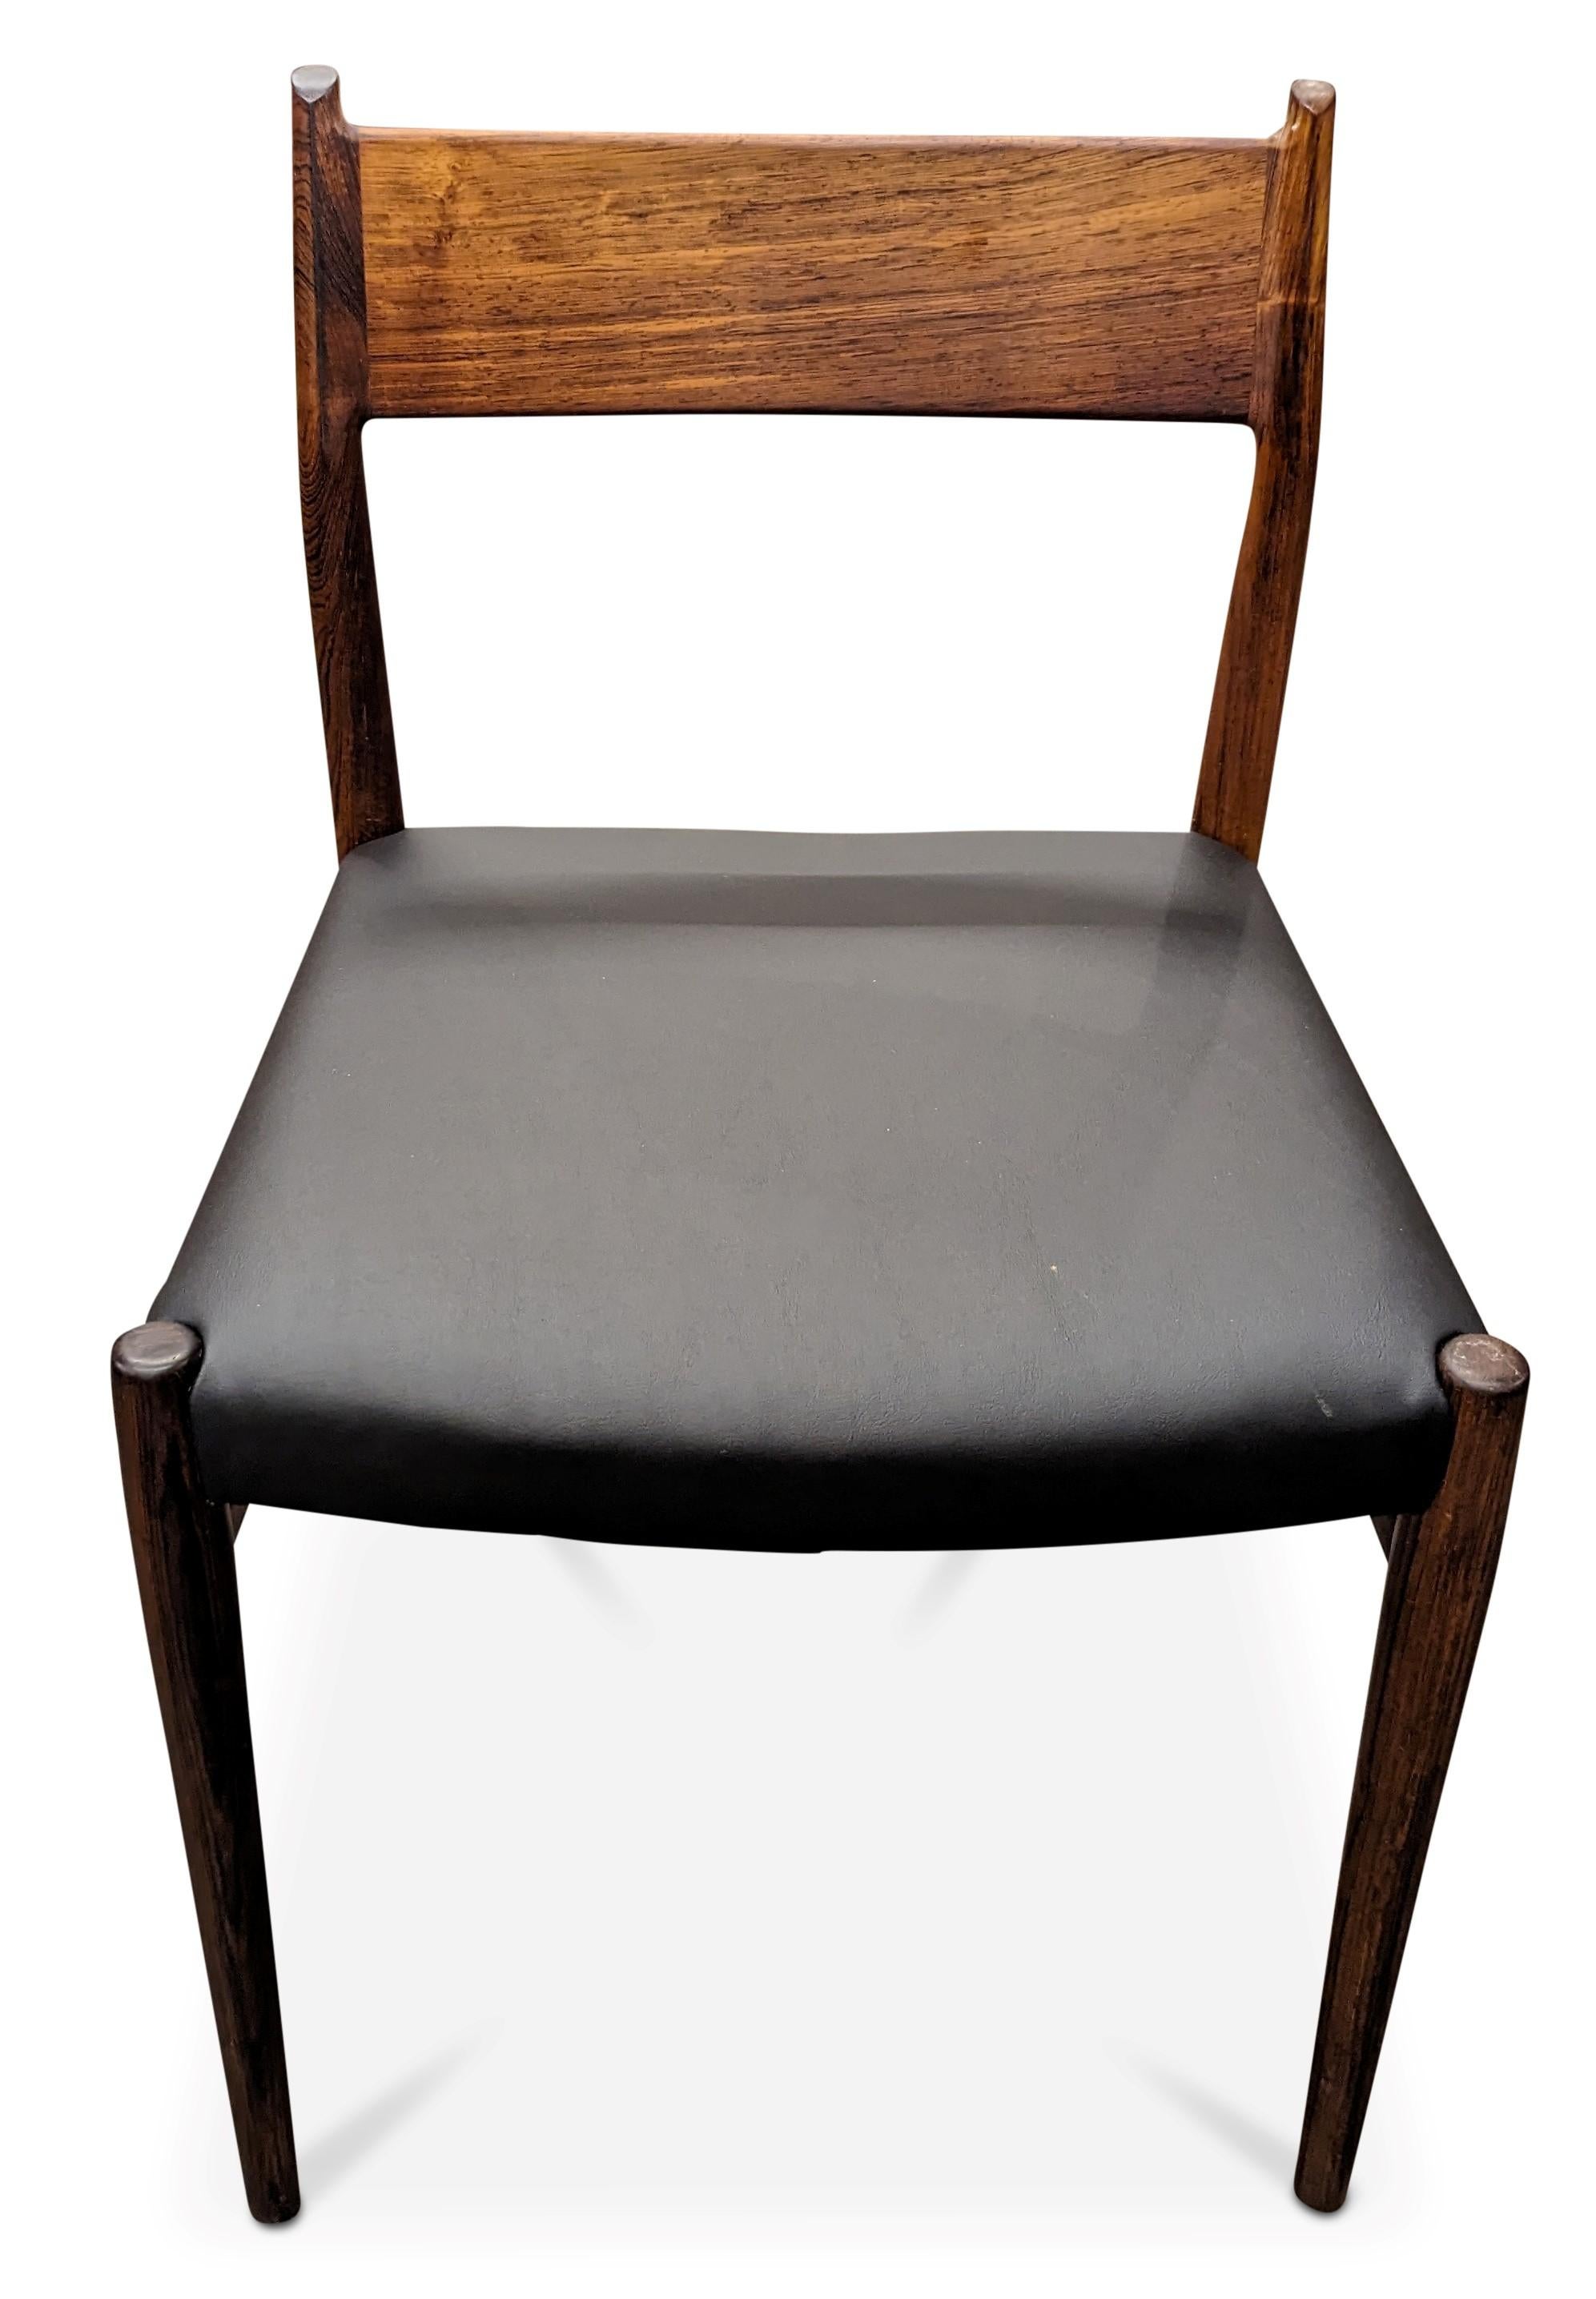 Scandinavian Modern Vintage Danish Arne Vodder for Sibast Mobler Rosewood Dining Chair - 082316